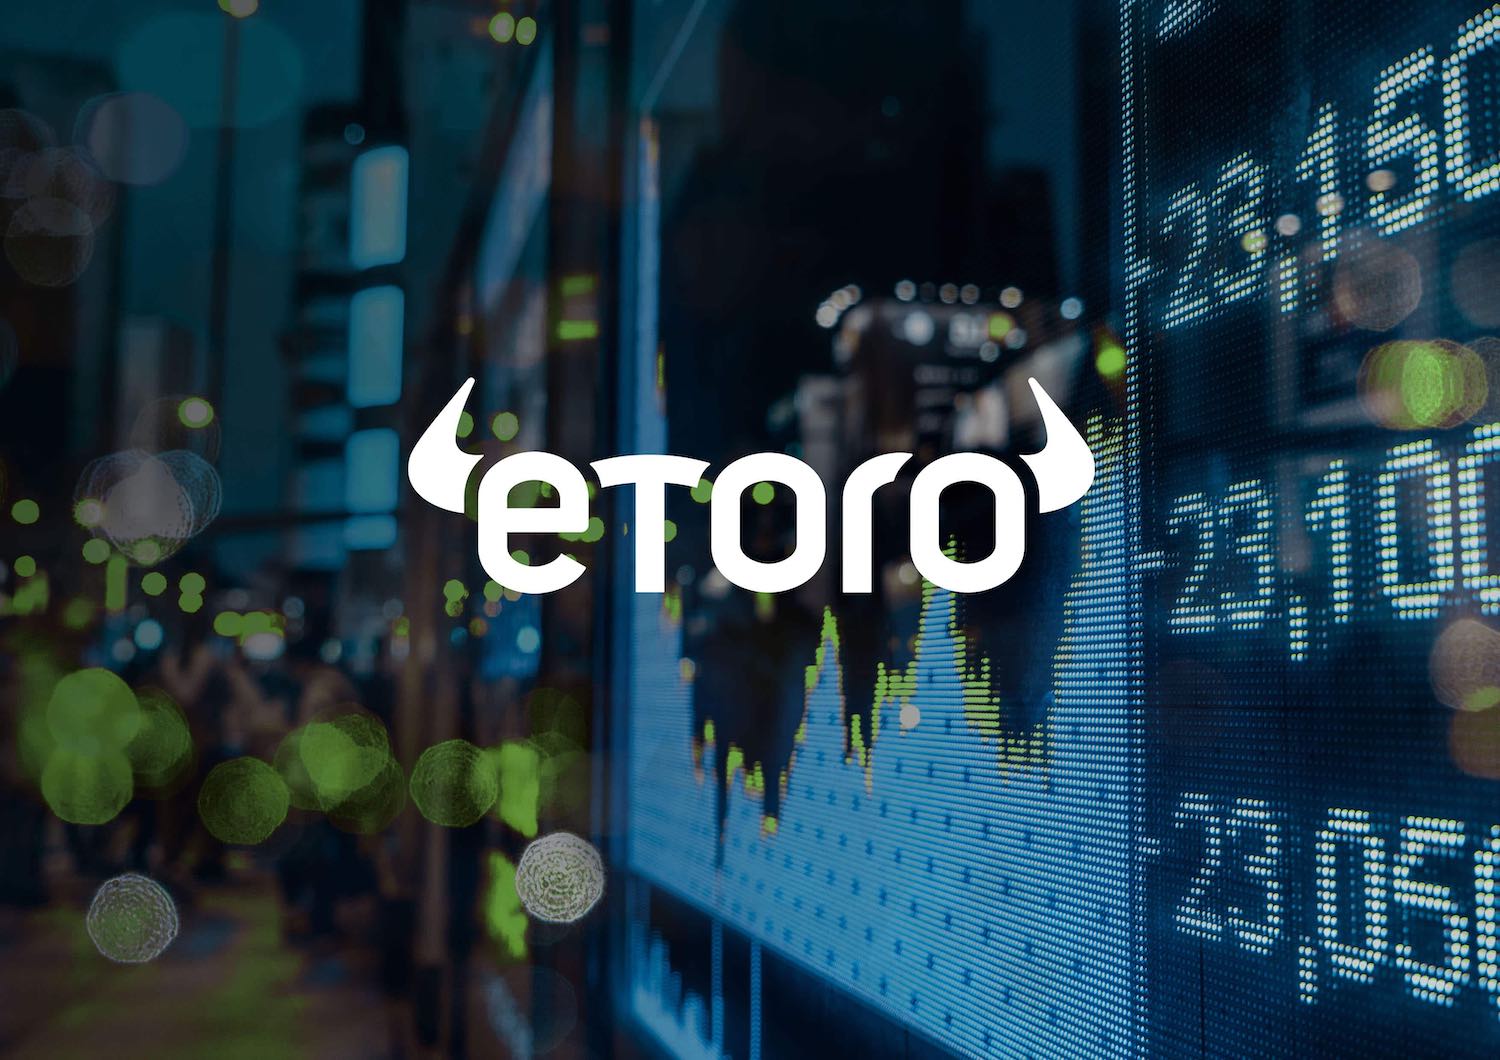 منصة eToro تهزّ التقييم المستثمرون يعرضون بيع أسهم ثانوية قيمتها 120$ مليون